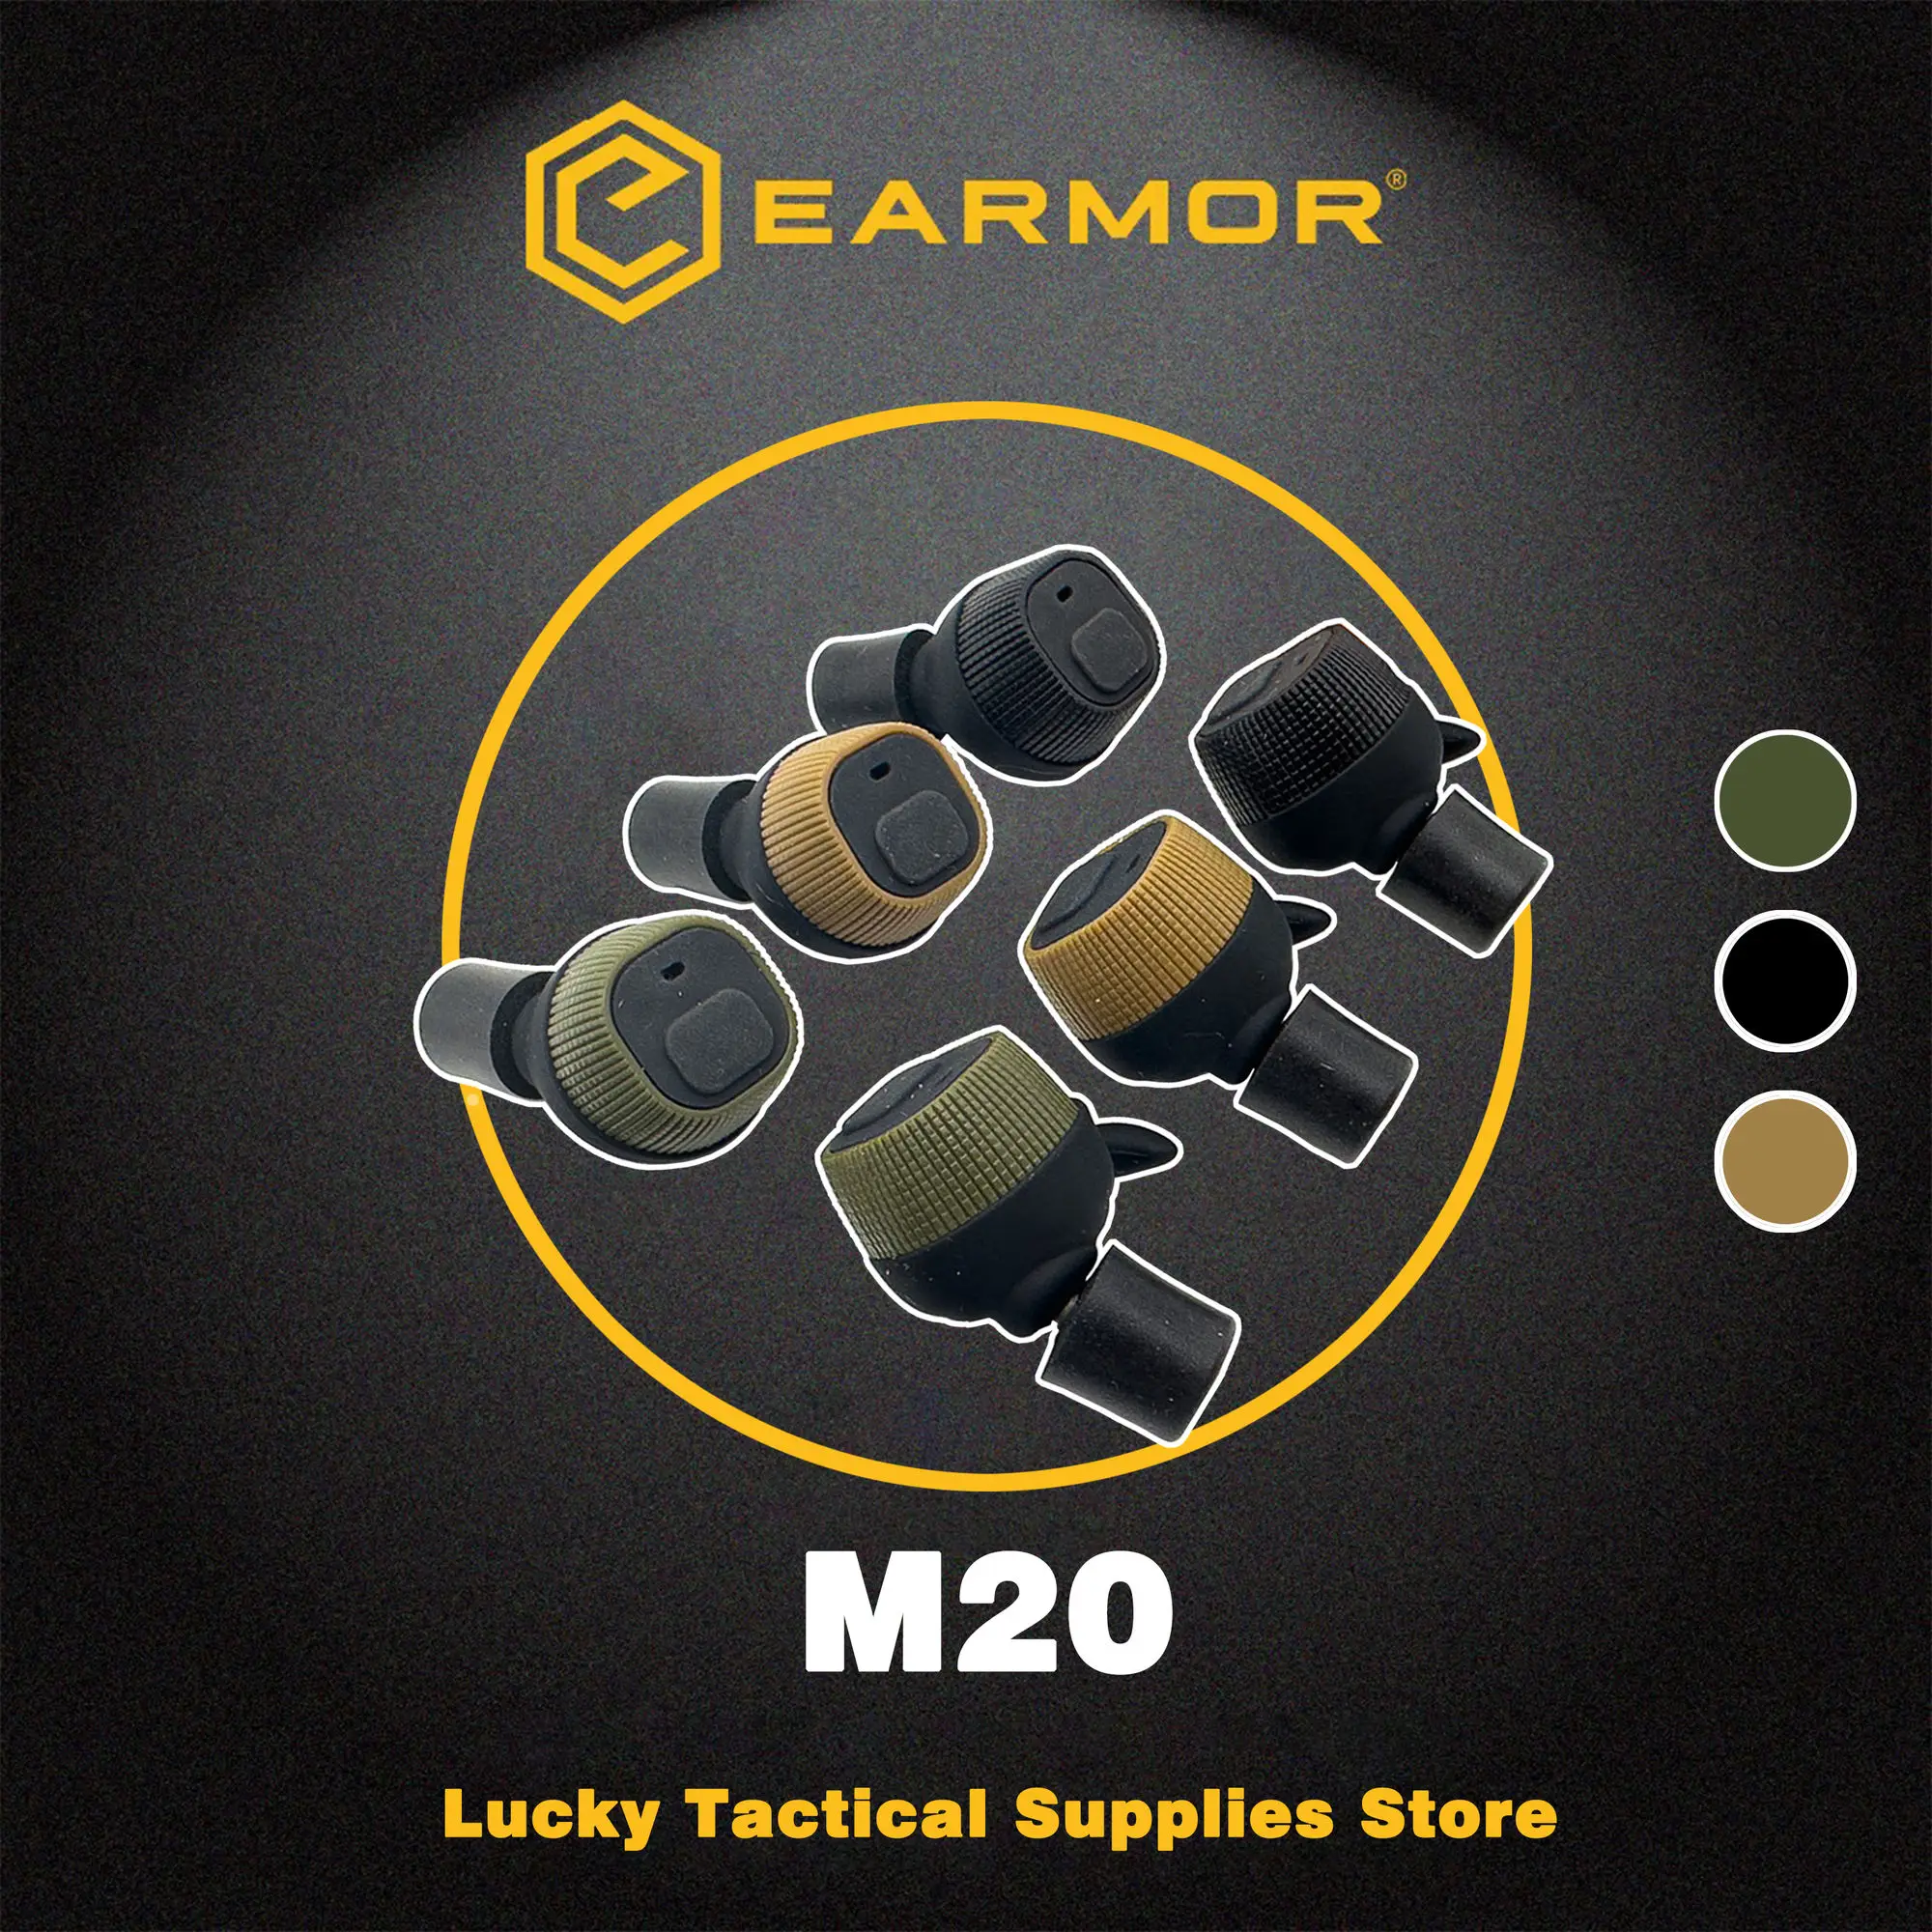 

Earmor M20 MOD3 тактическая гарнитура электронные шумоподавляющие беруши шумоподавляющие для съемки Защита слуха